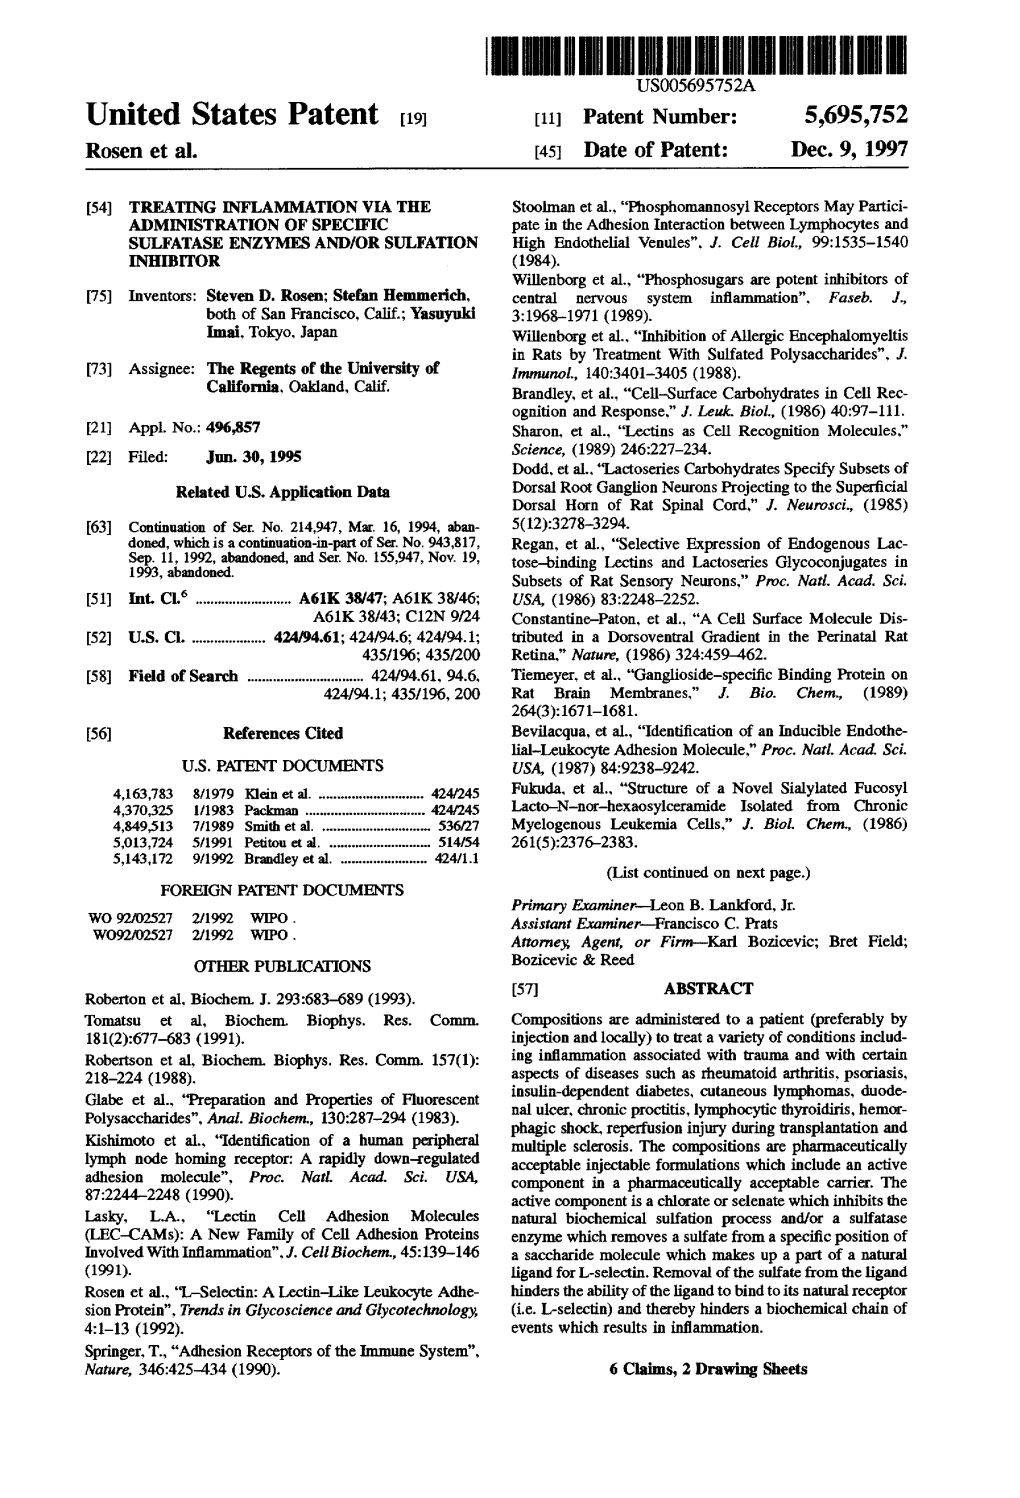 United States Patent (19) 11 Patent Number: 5,695,752 Rosen Et Al